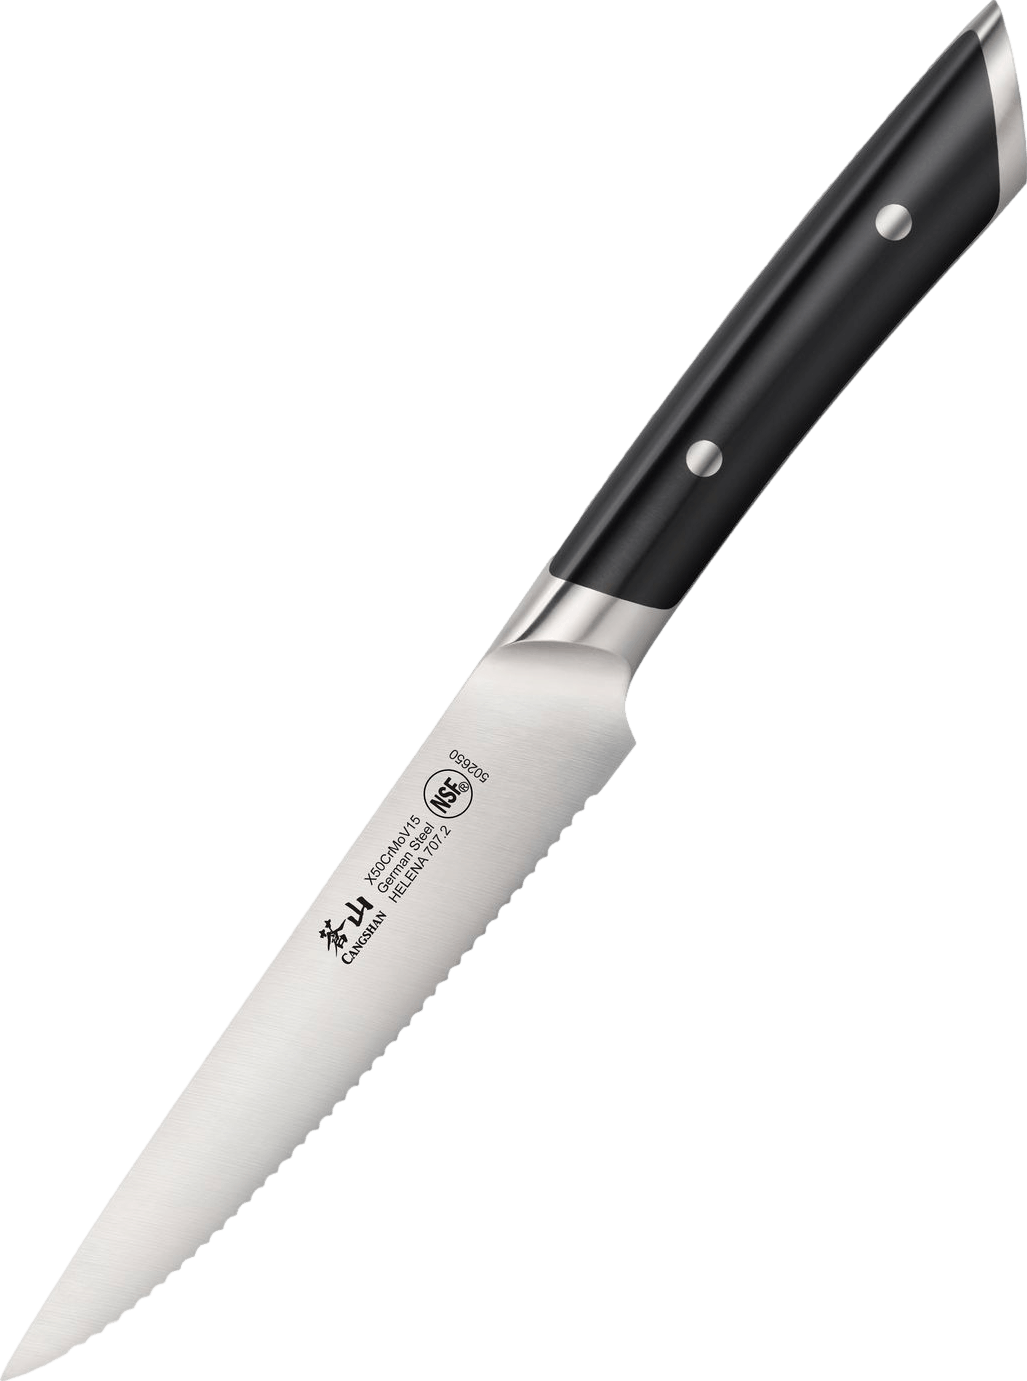 Cangshan Helena 5" Serrated Utility Knife